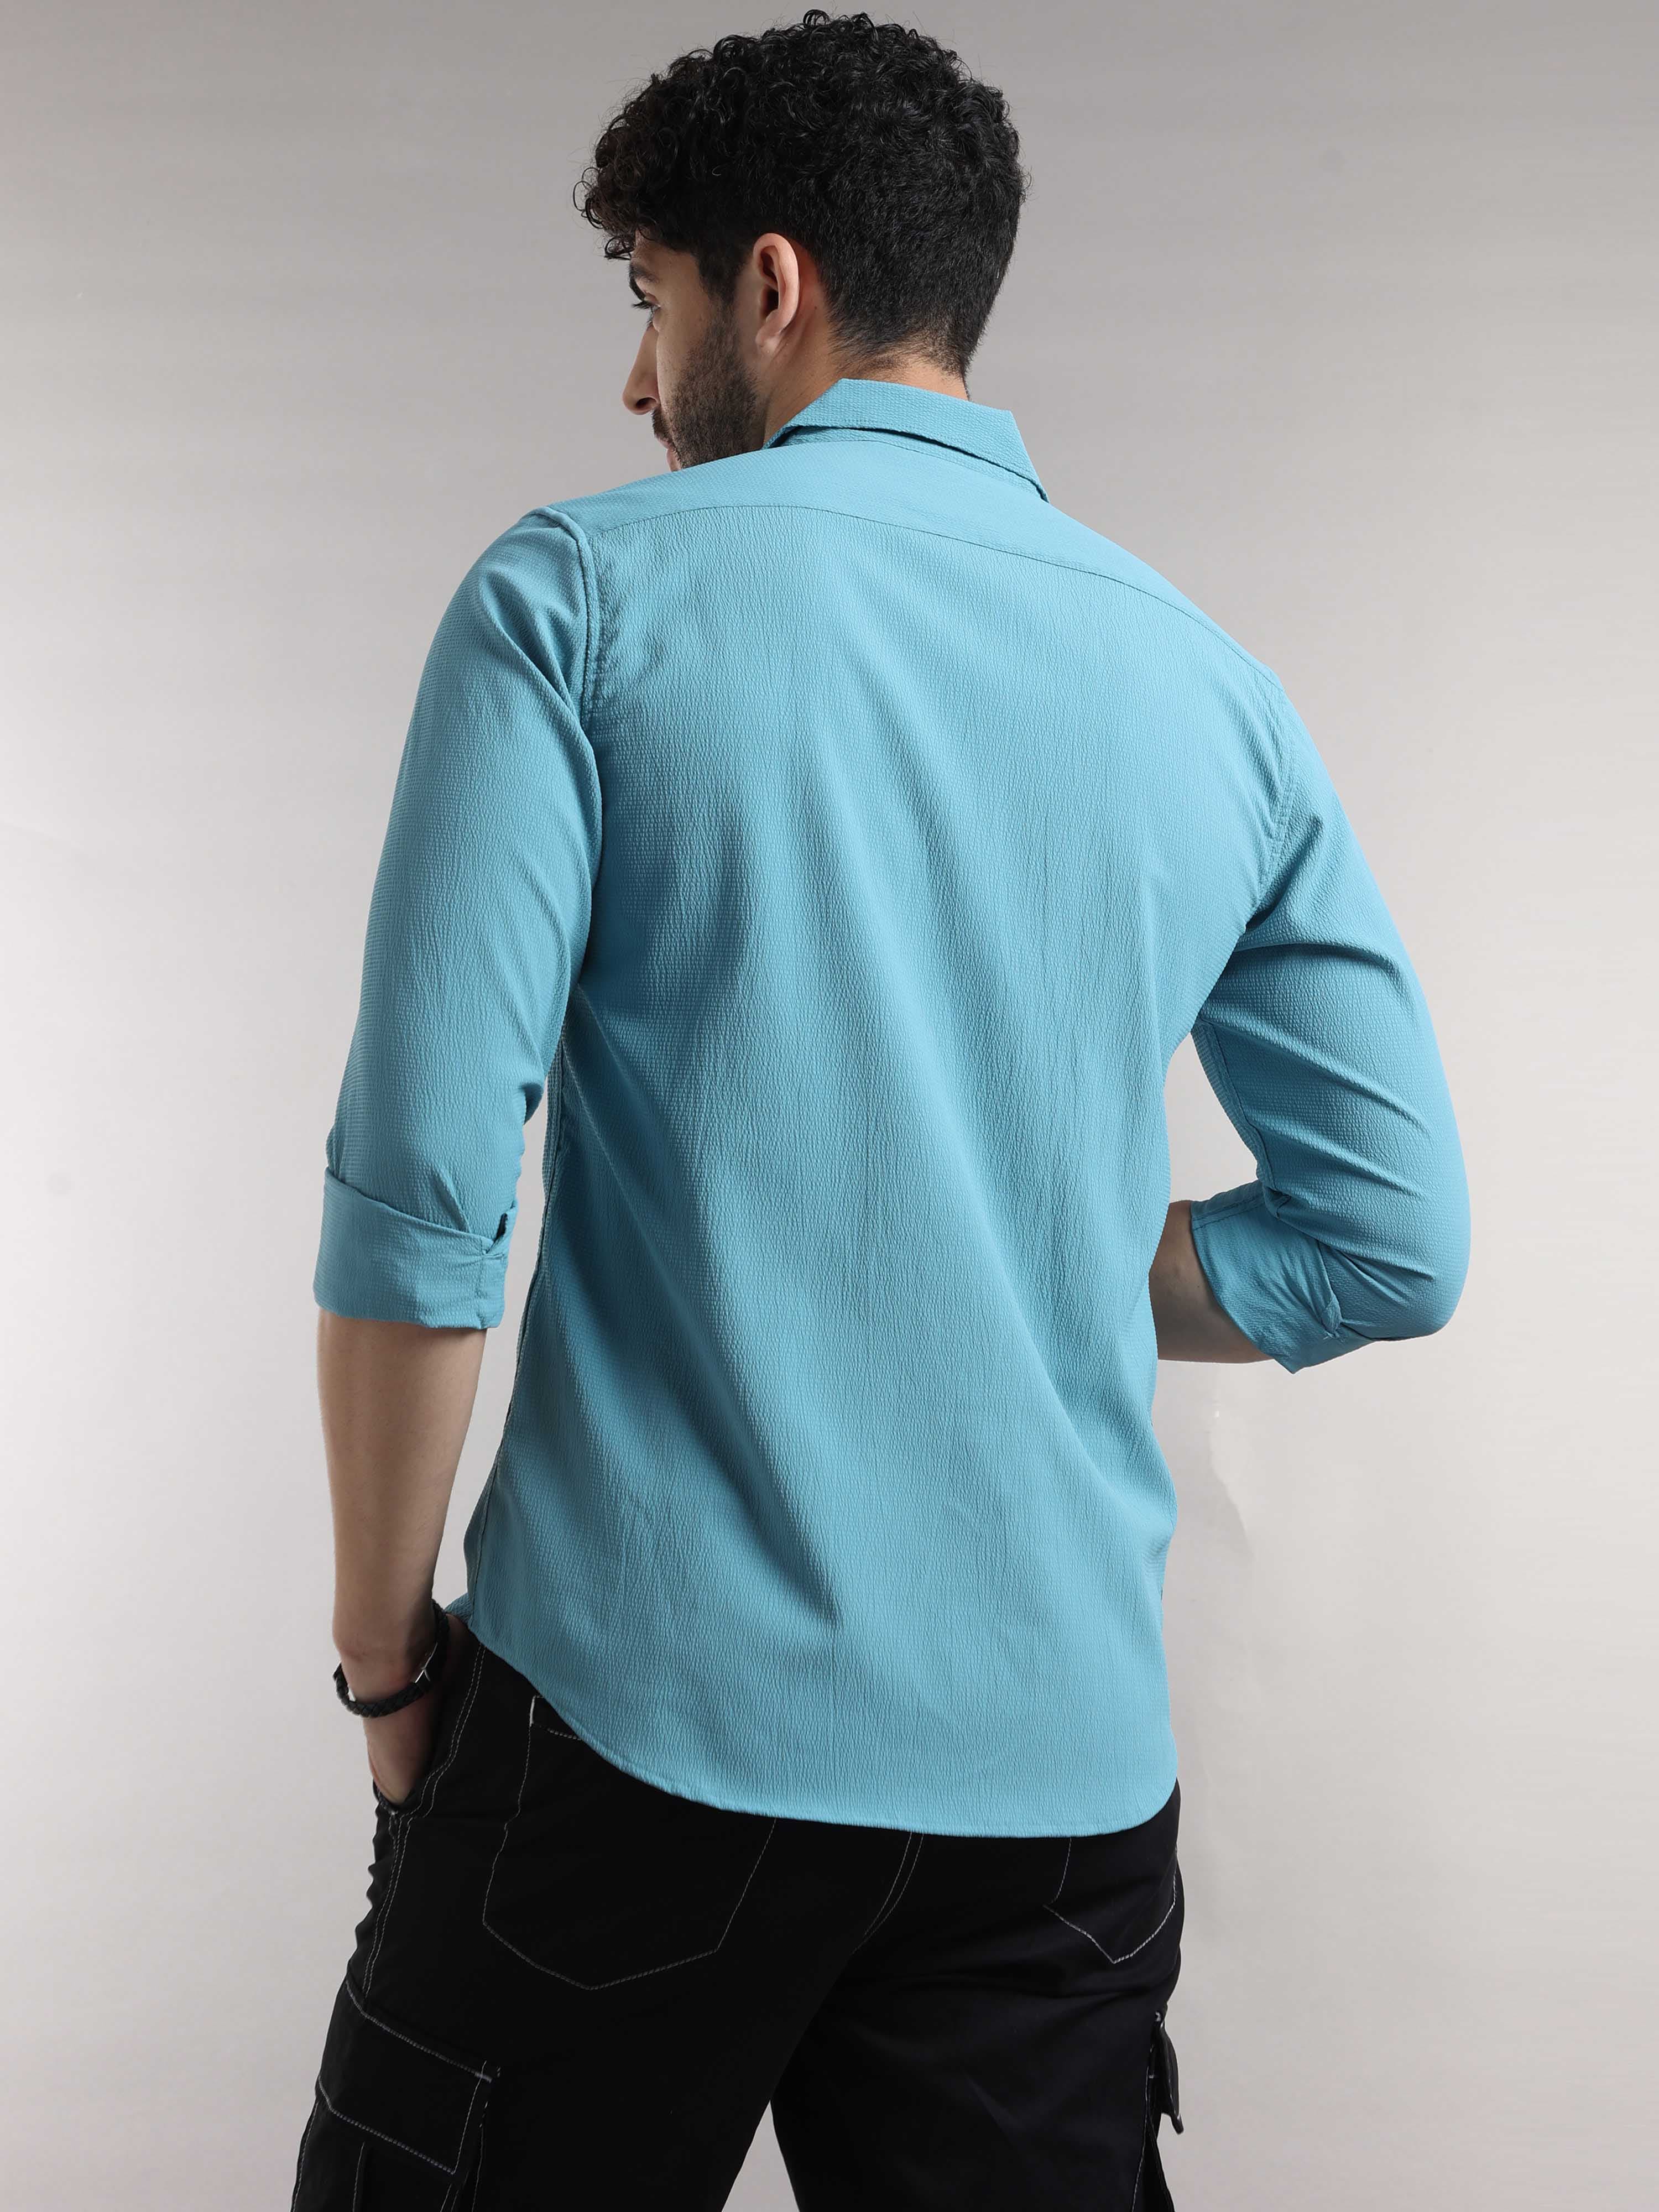 Buy Latest Blue Seer Sucker Shirt For Men Online in IndiaRs. 1299.00